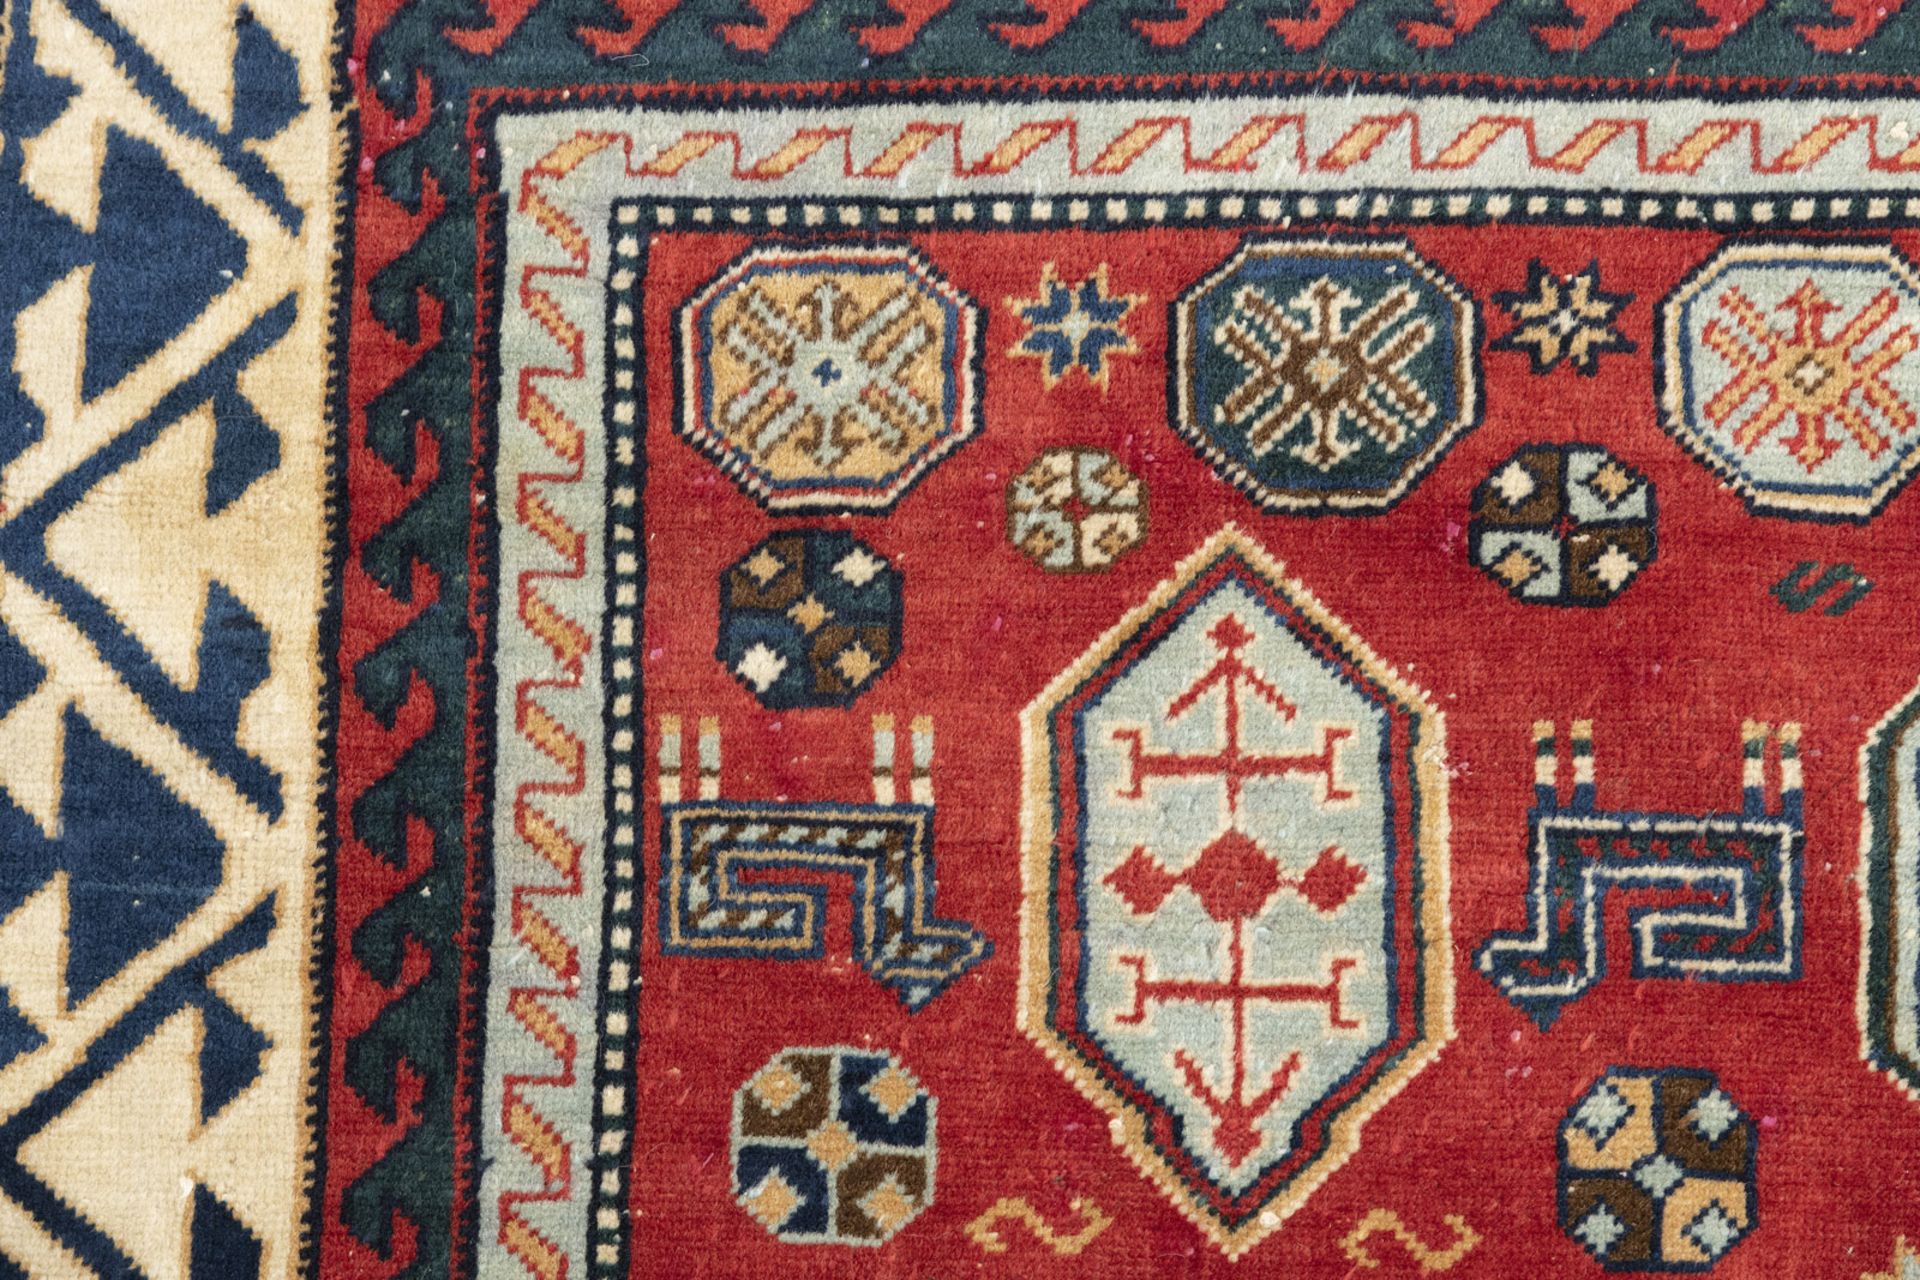 Alter Teppich mit Fakhralo-Musterung - Bild 4 aus 6